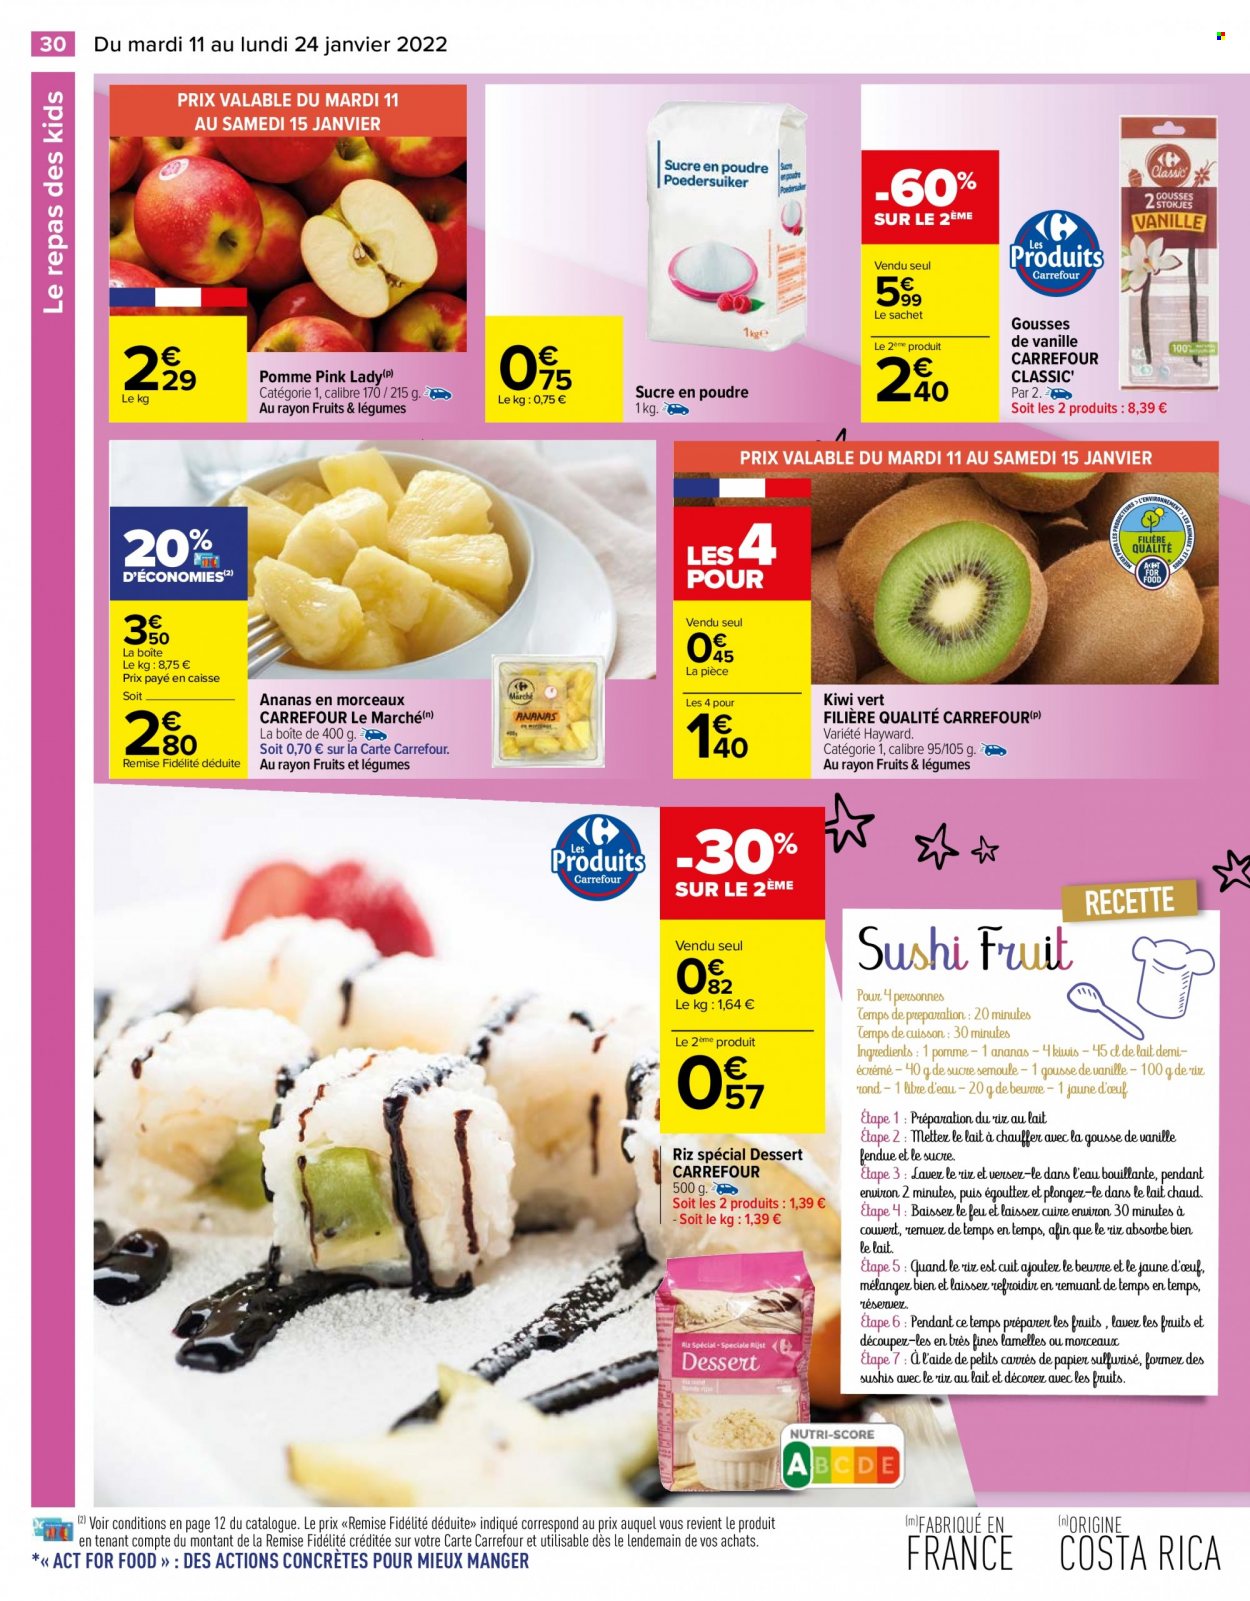 thumbnail - Catalogue Carrefour Hypermarchés - 11/01/2022 - 24/01/2022 - Produits soldés - kiwi, ananas, dessert, sucre en poudre, riz. Page 30.